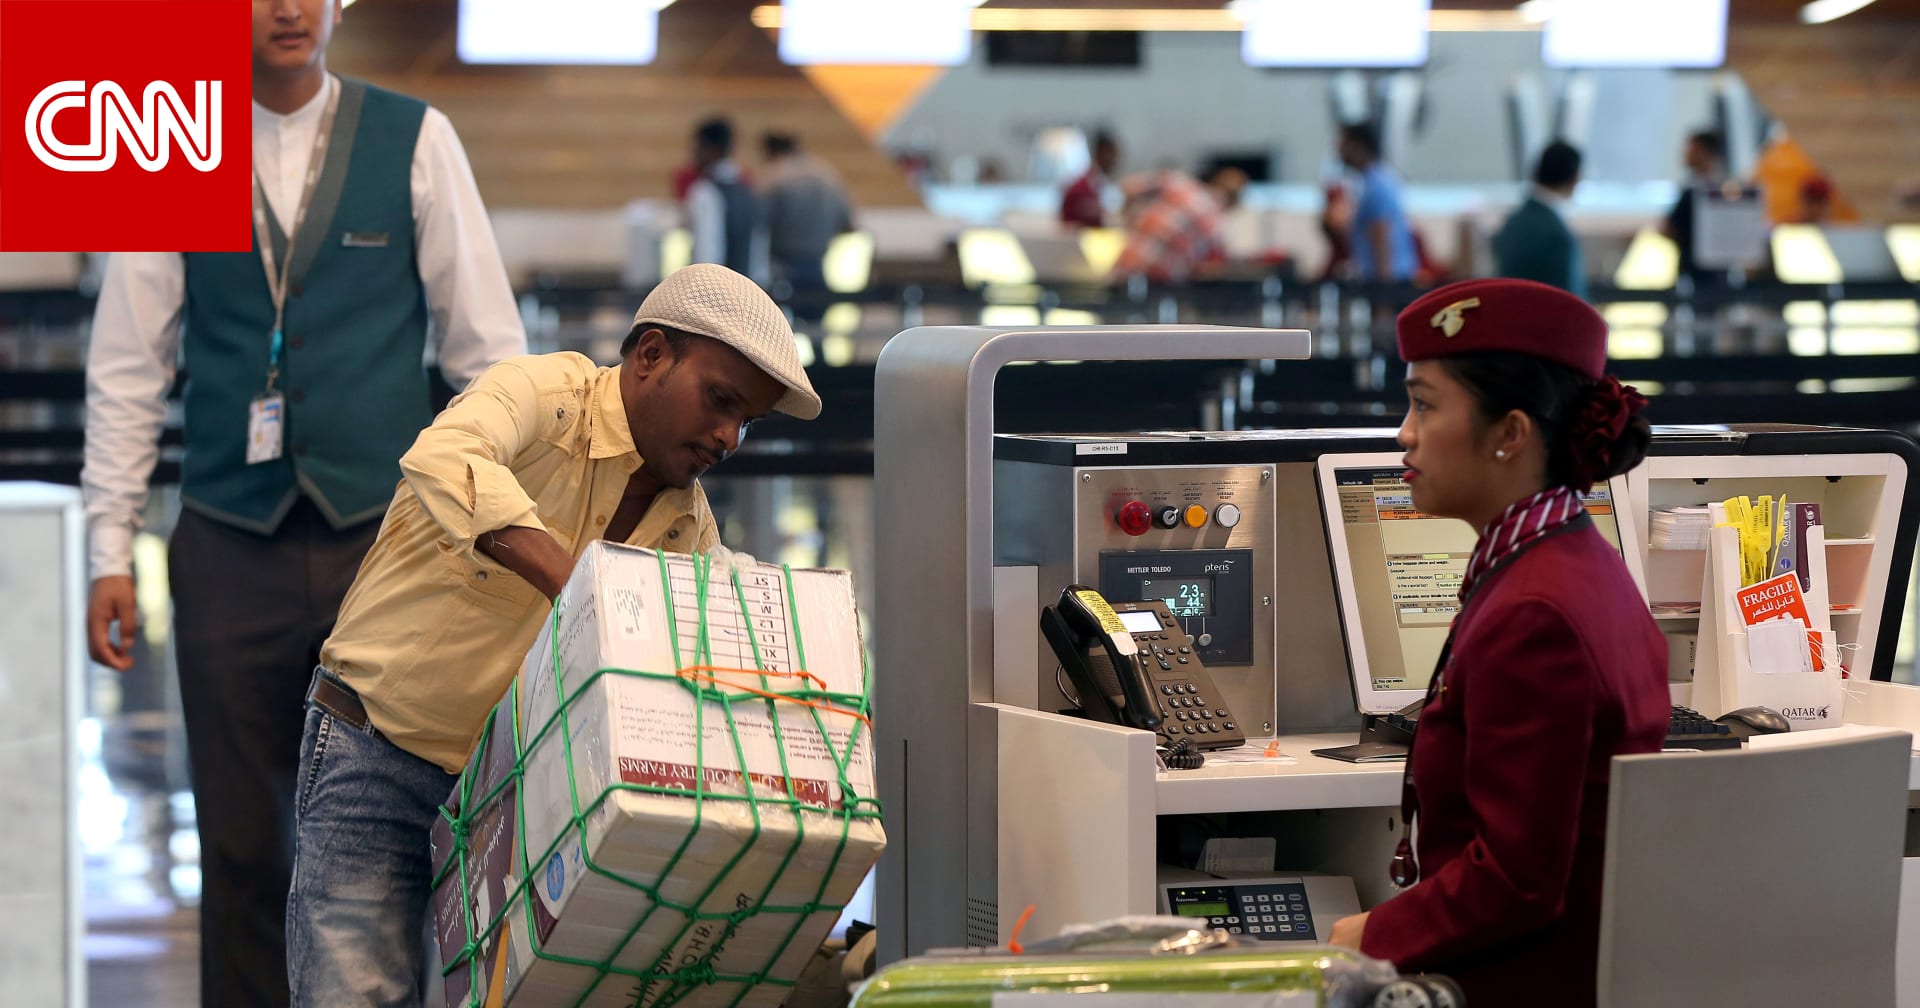 قطر تعلن إلغاء نظام إذن السفر المطلوب من العاملين عند رغبتهم في مغادرة البلاد - CNN Arabic